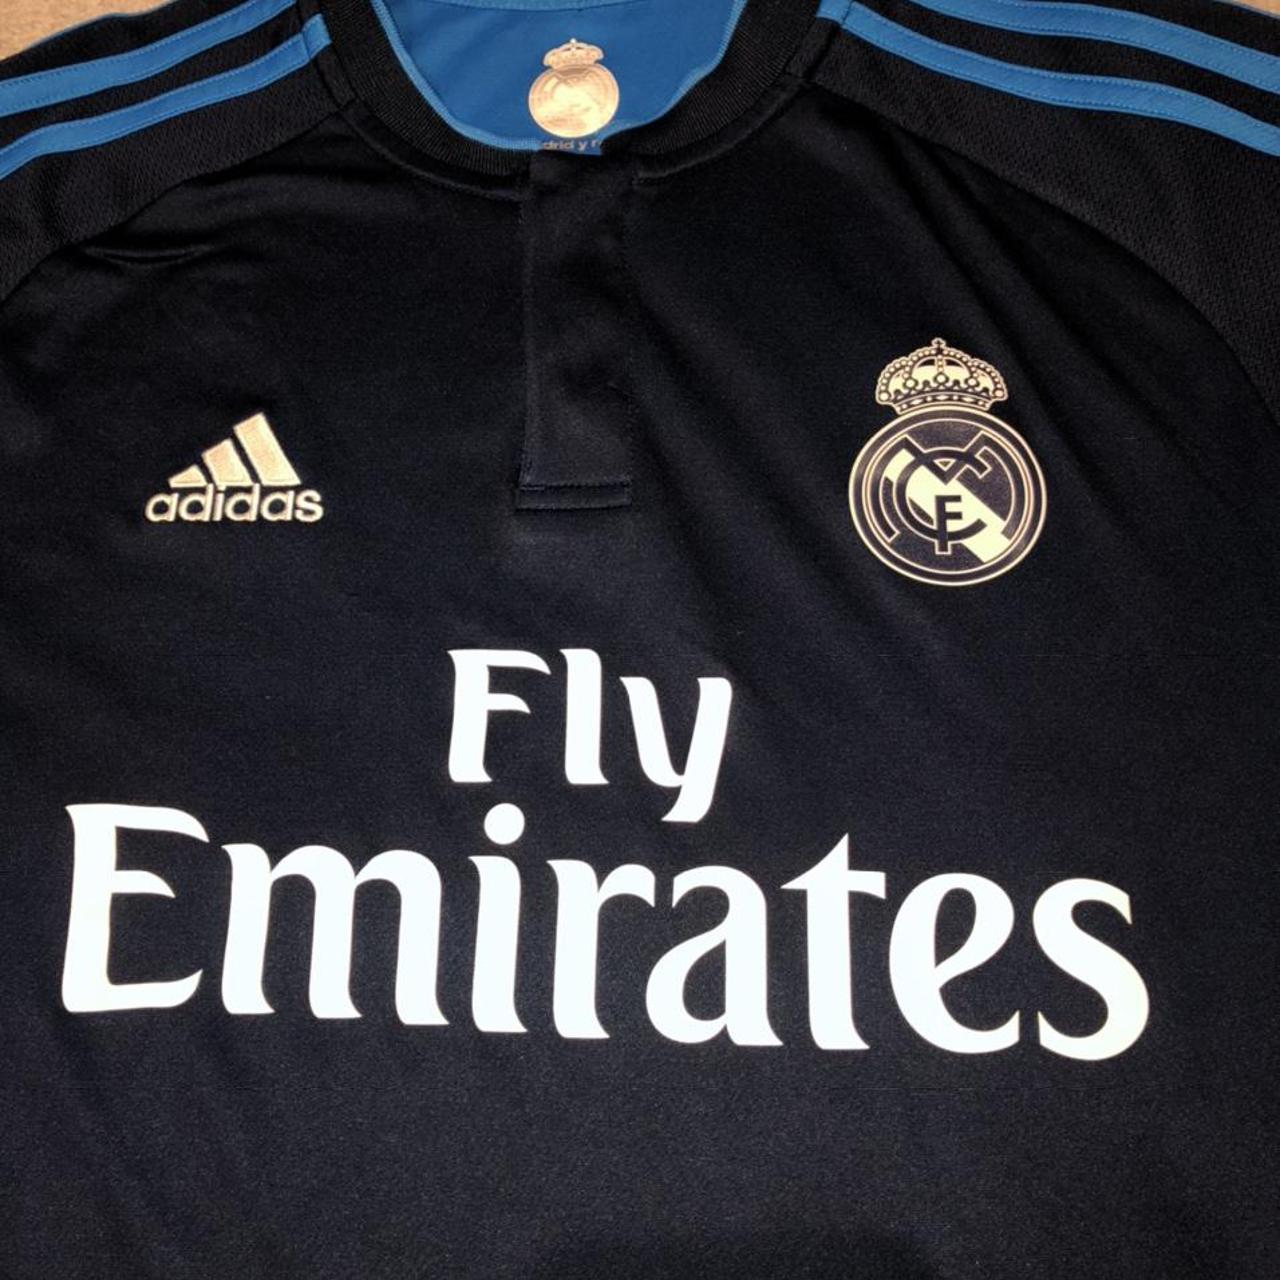 Adidas Real Madrid 3rd Shirt 2015-16 Medium Mens... - Depop